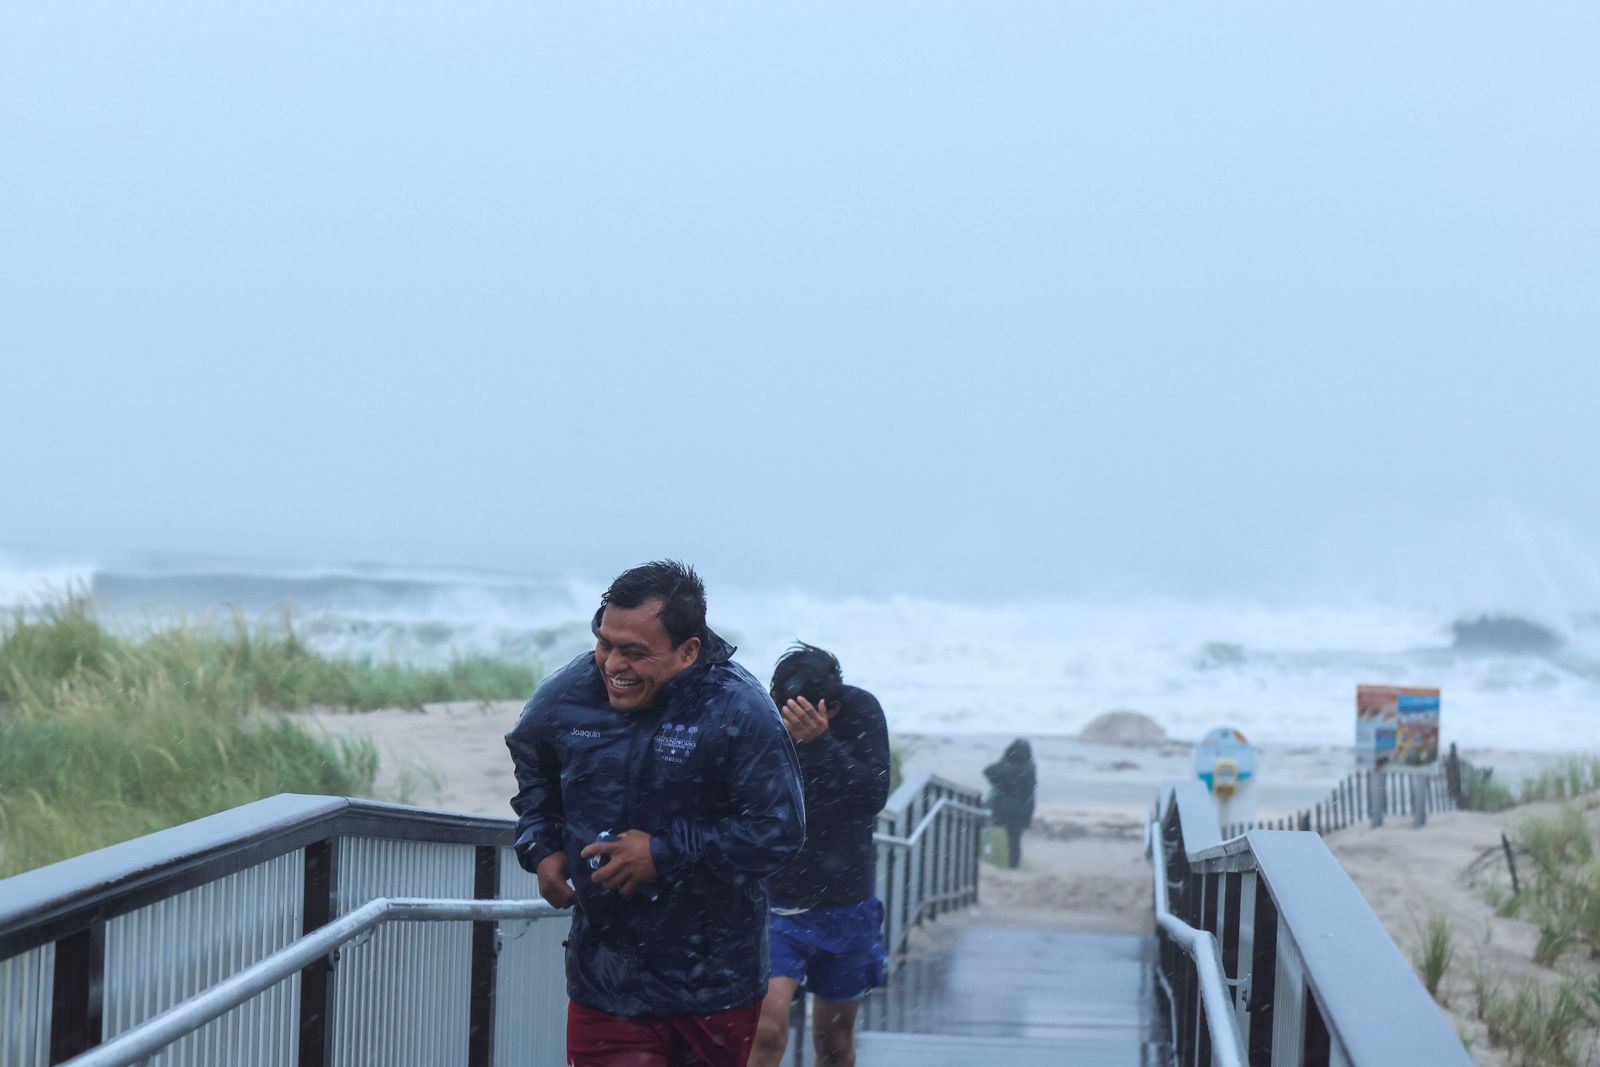  أشخاص عائدين من مشاهدة الأمواج على شاطئ بونكوج بينما انخفض الإعصار هنري إلى عاصفة استوائية. - REUTERS